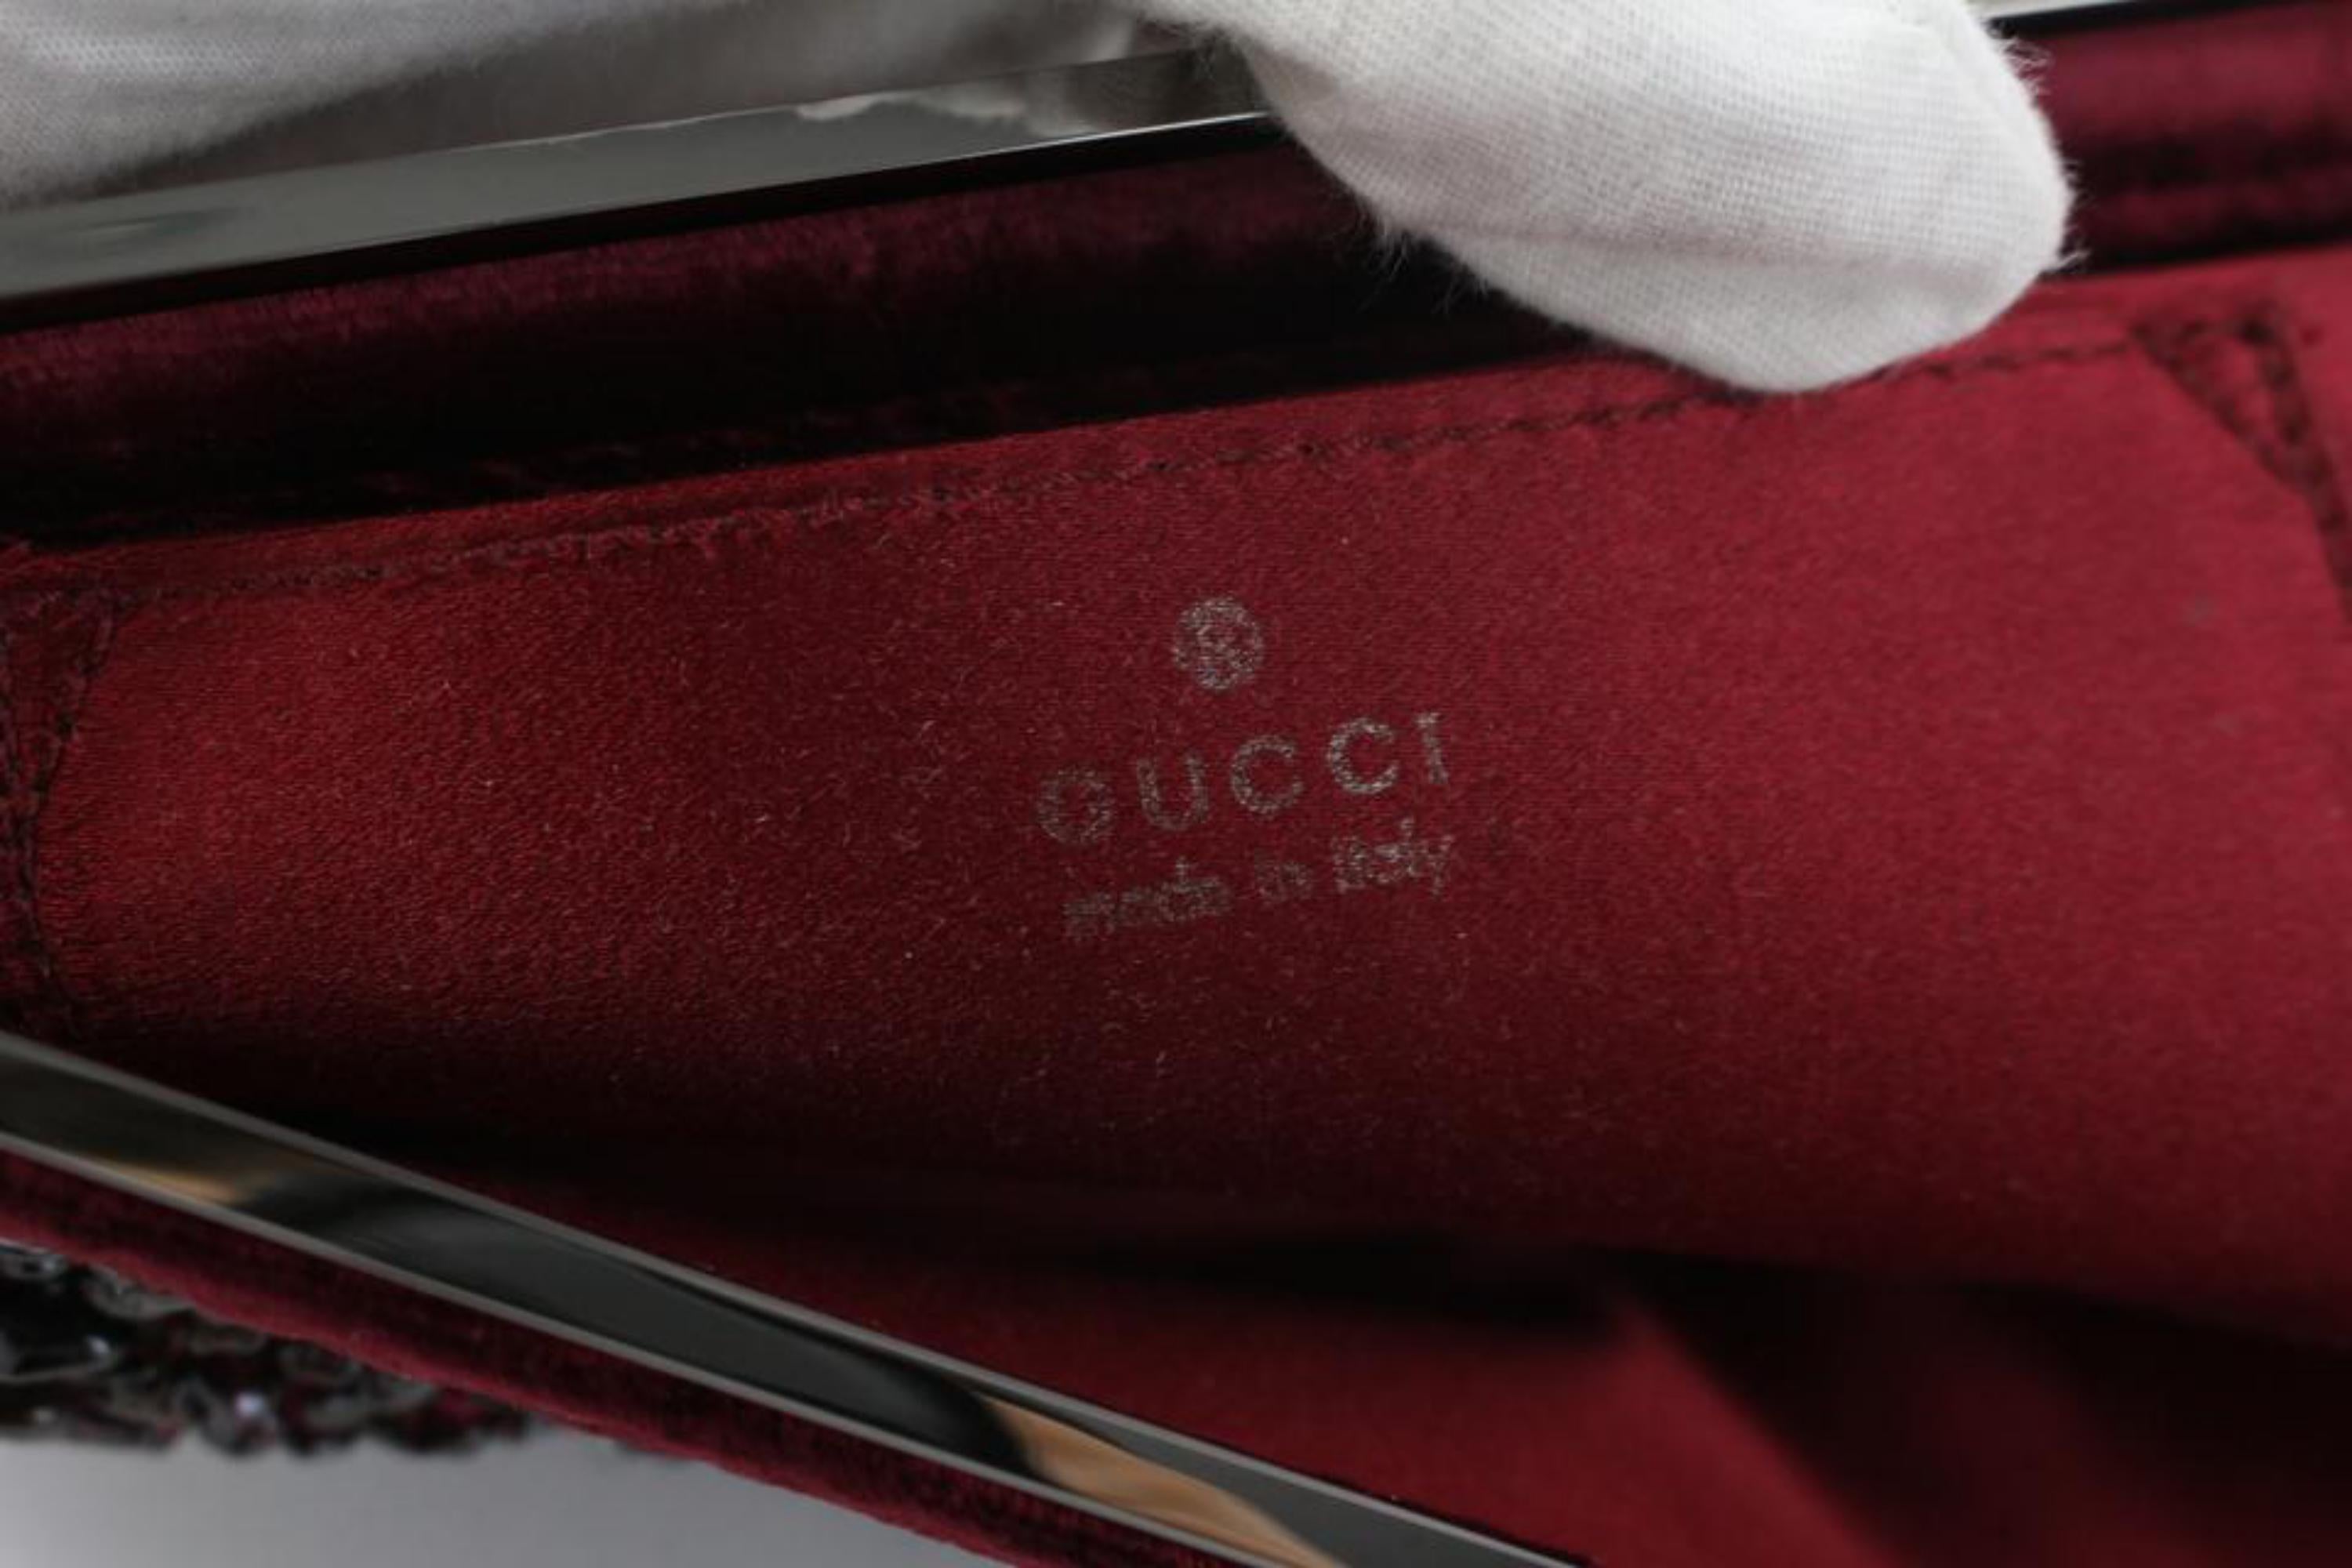 Gucci Clutch Stone Beaded 17gz0724 Bordeaux Velour X Satin Wristlet For Sale 1